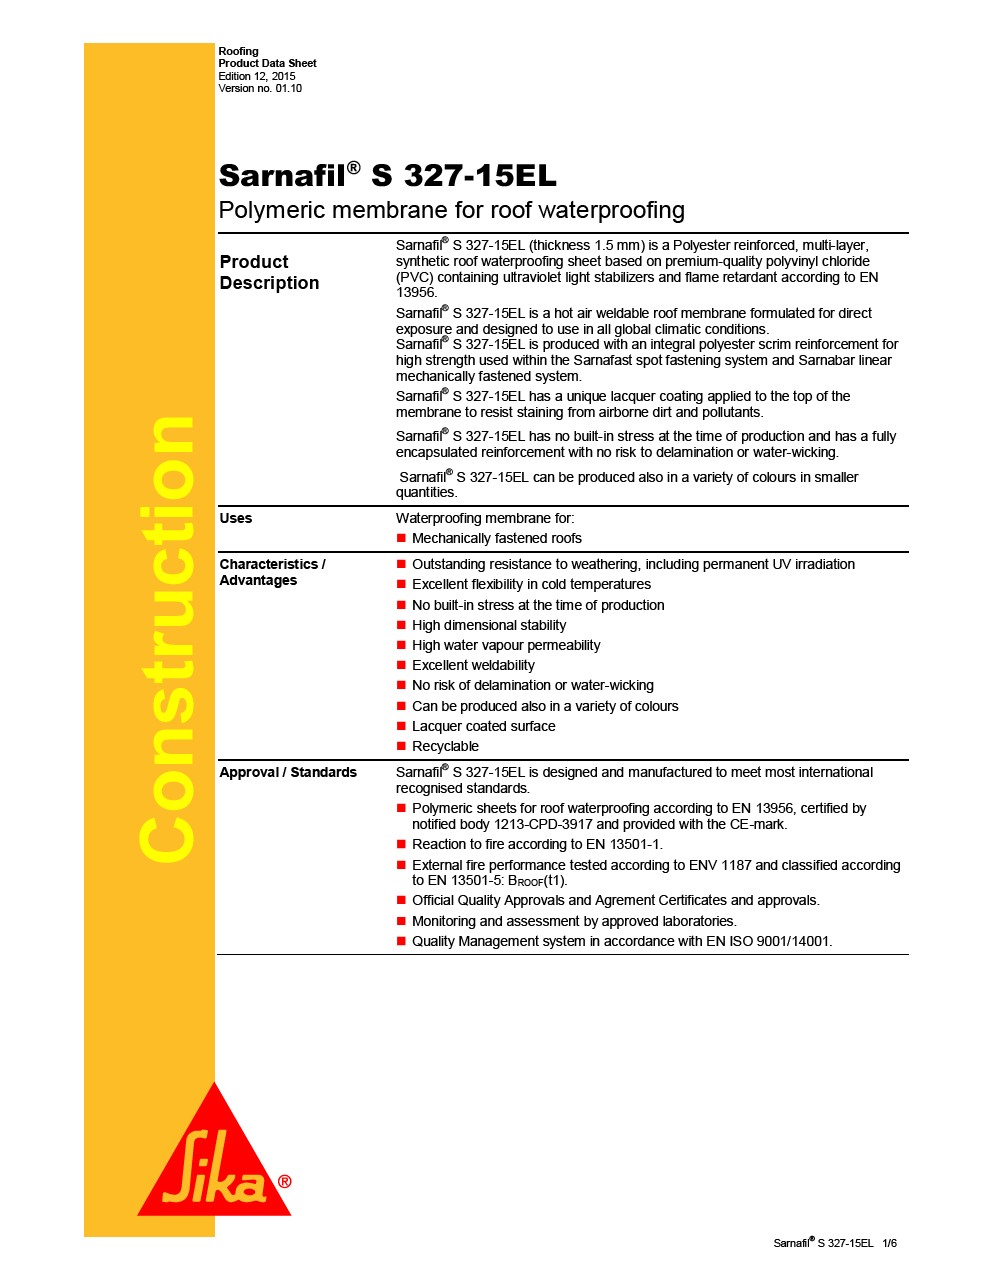 Sarnafil S 327-15EL